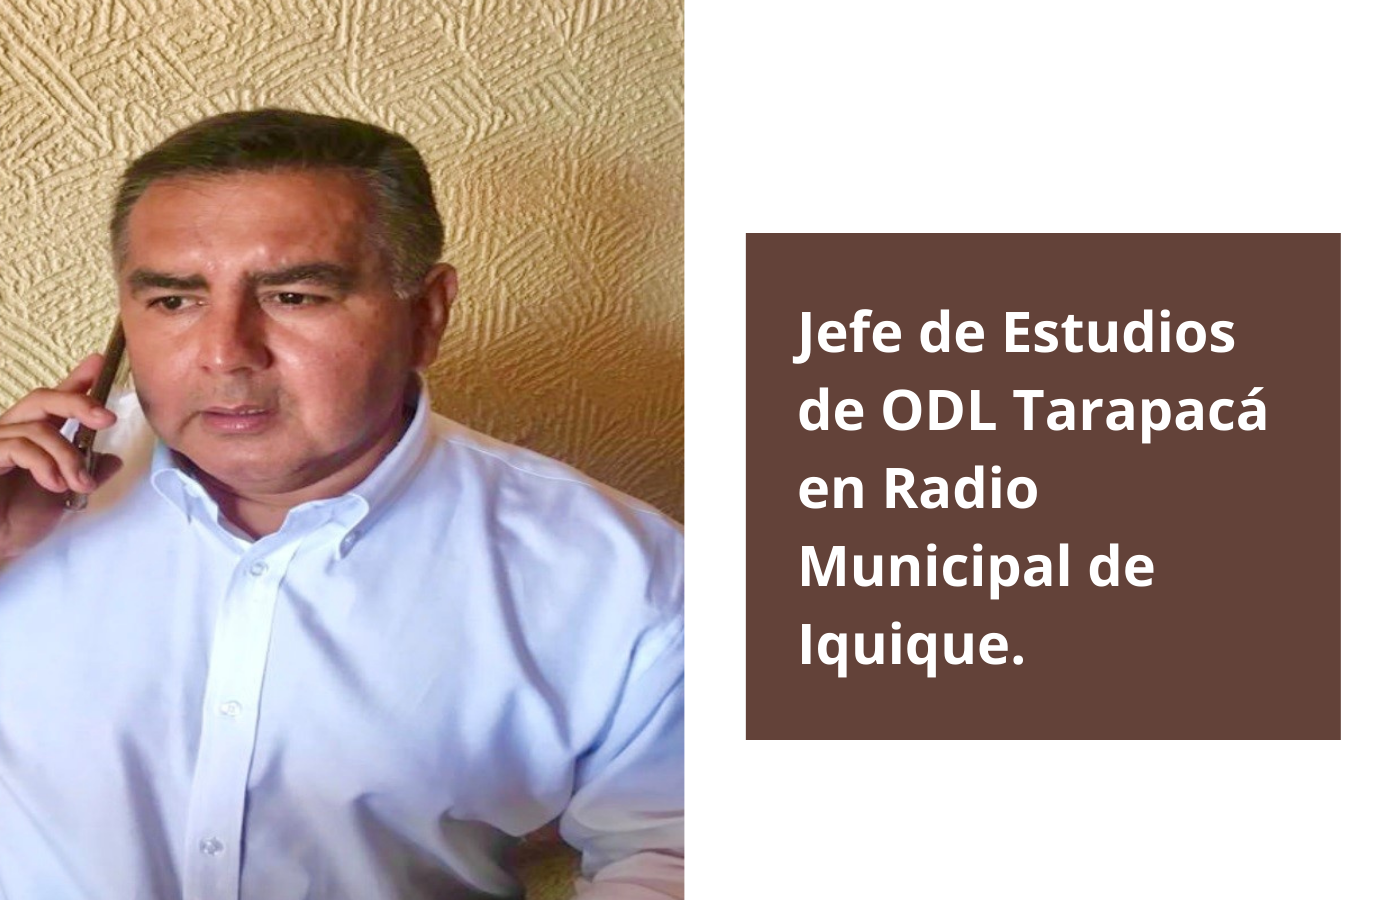 Jefe de Estudios de la Oficina de Defensa Laboral Tarapacá en Radio Municipal de Iquique